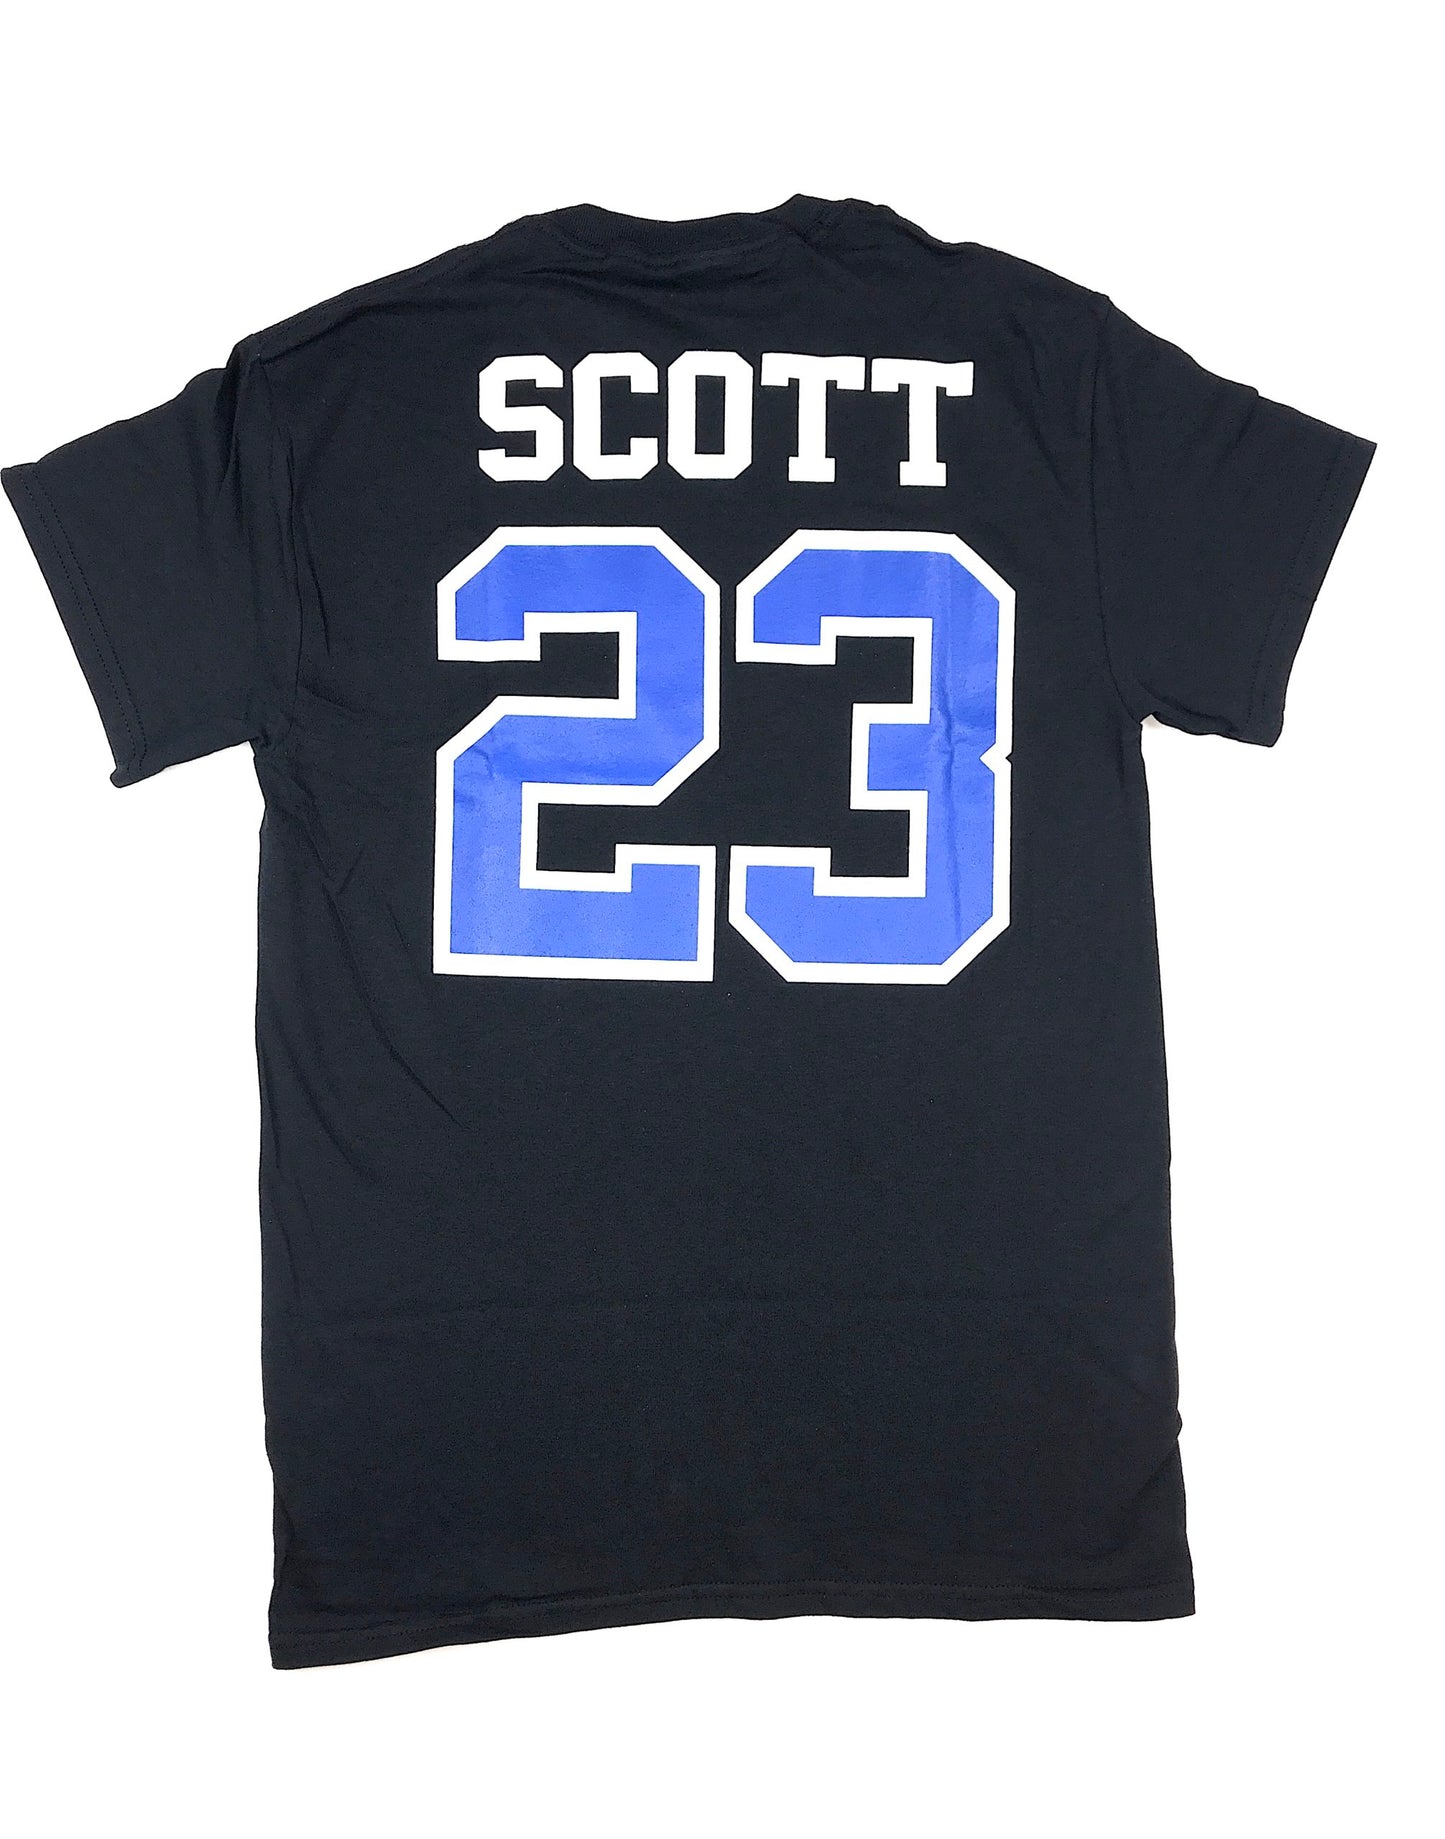 Scott 23 One Tree Hill – T Shirt – Black